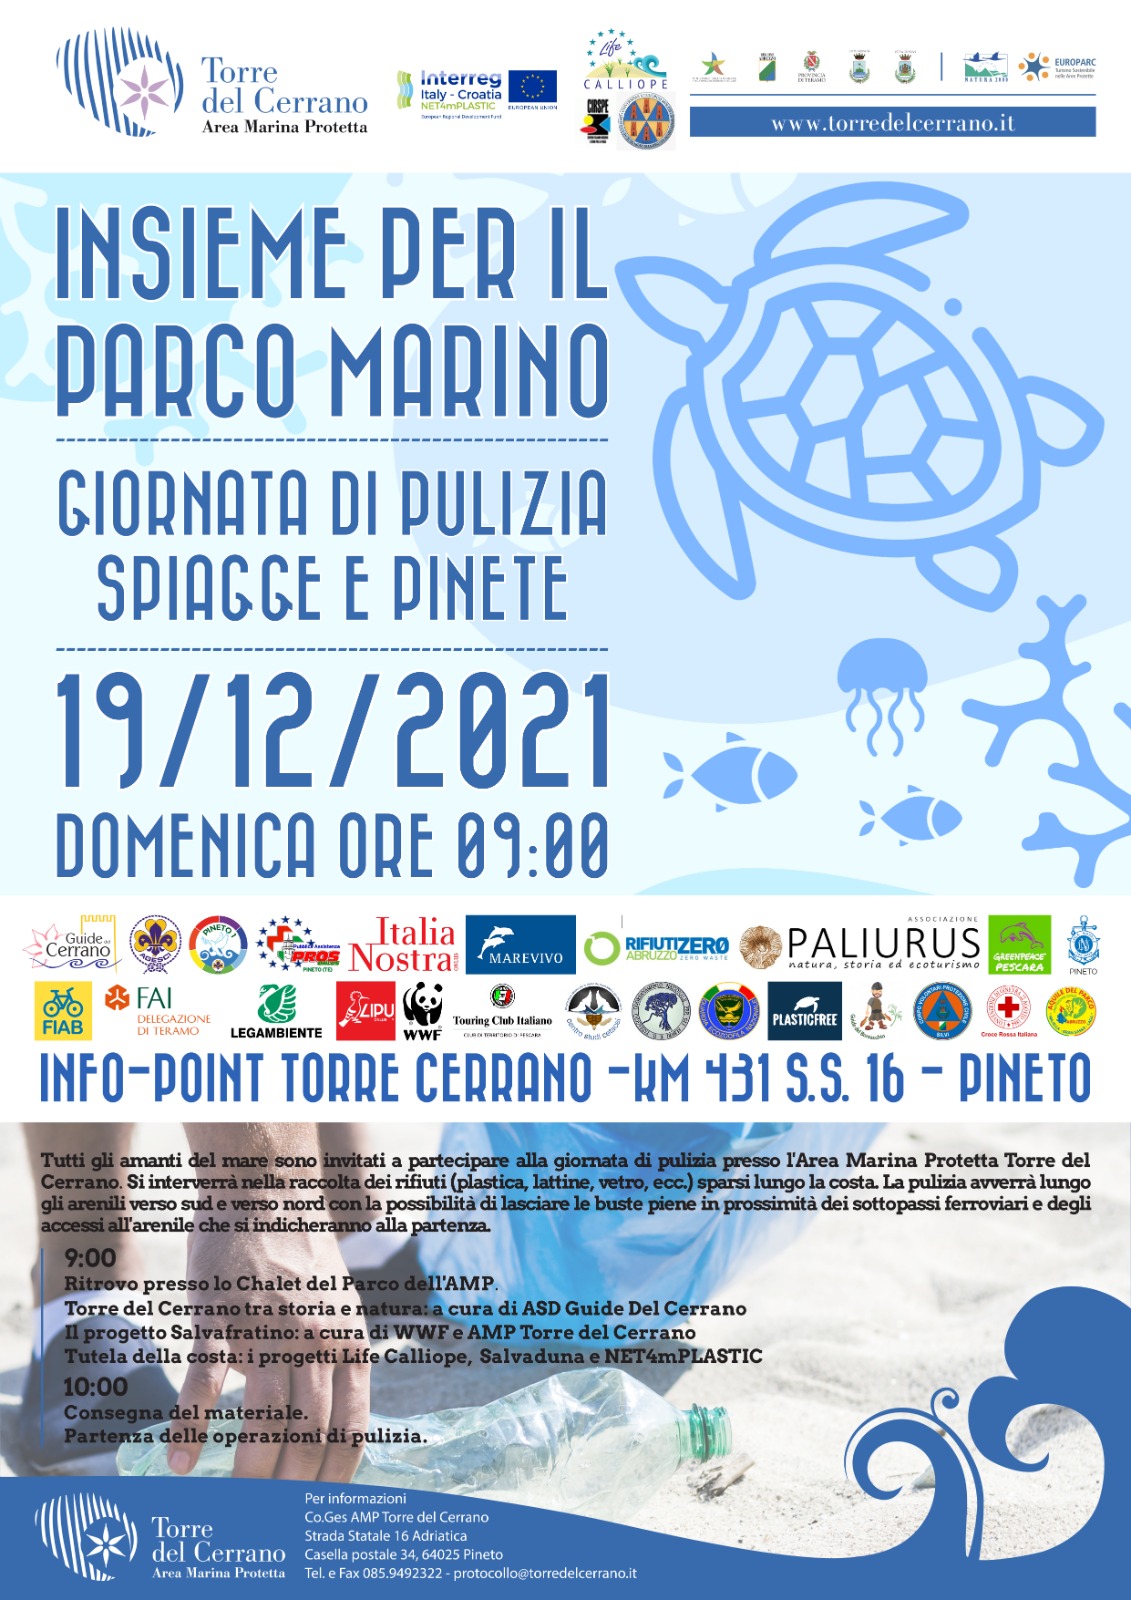 Pineto AMP. “Insieme per il Parco Marino”: giornata ecologica per la pulizia di spiagge e pinete